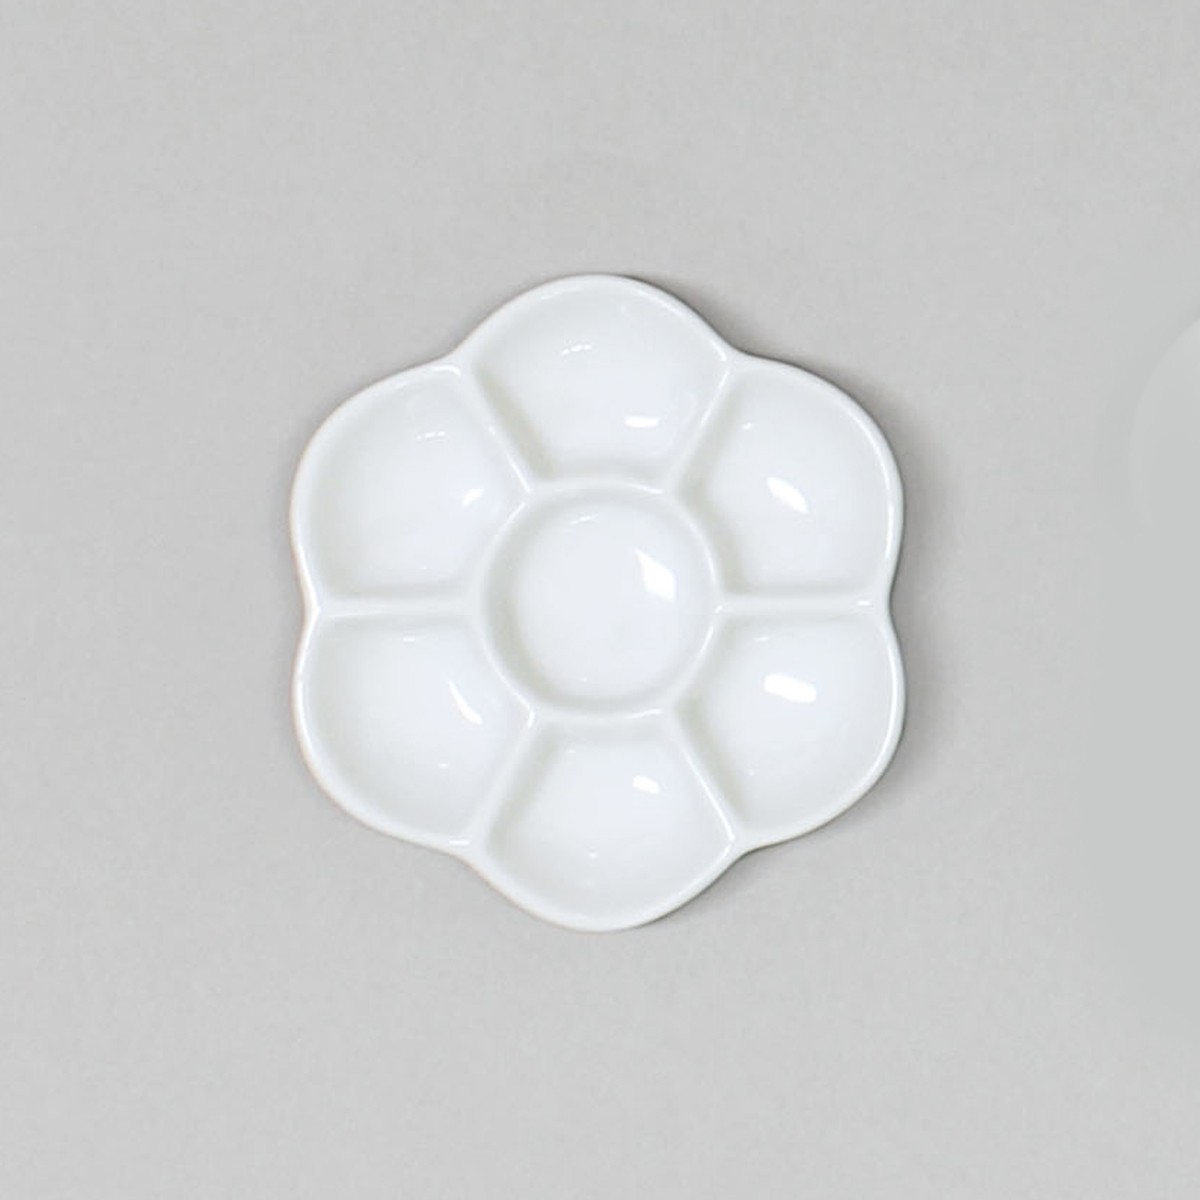  слива тарелка диаметр 85mm керамика производства глубокий type [ Palette краситель .. . тарелка краситель тарелка керамика производства ]